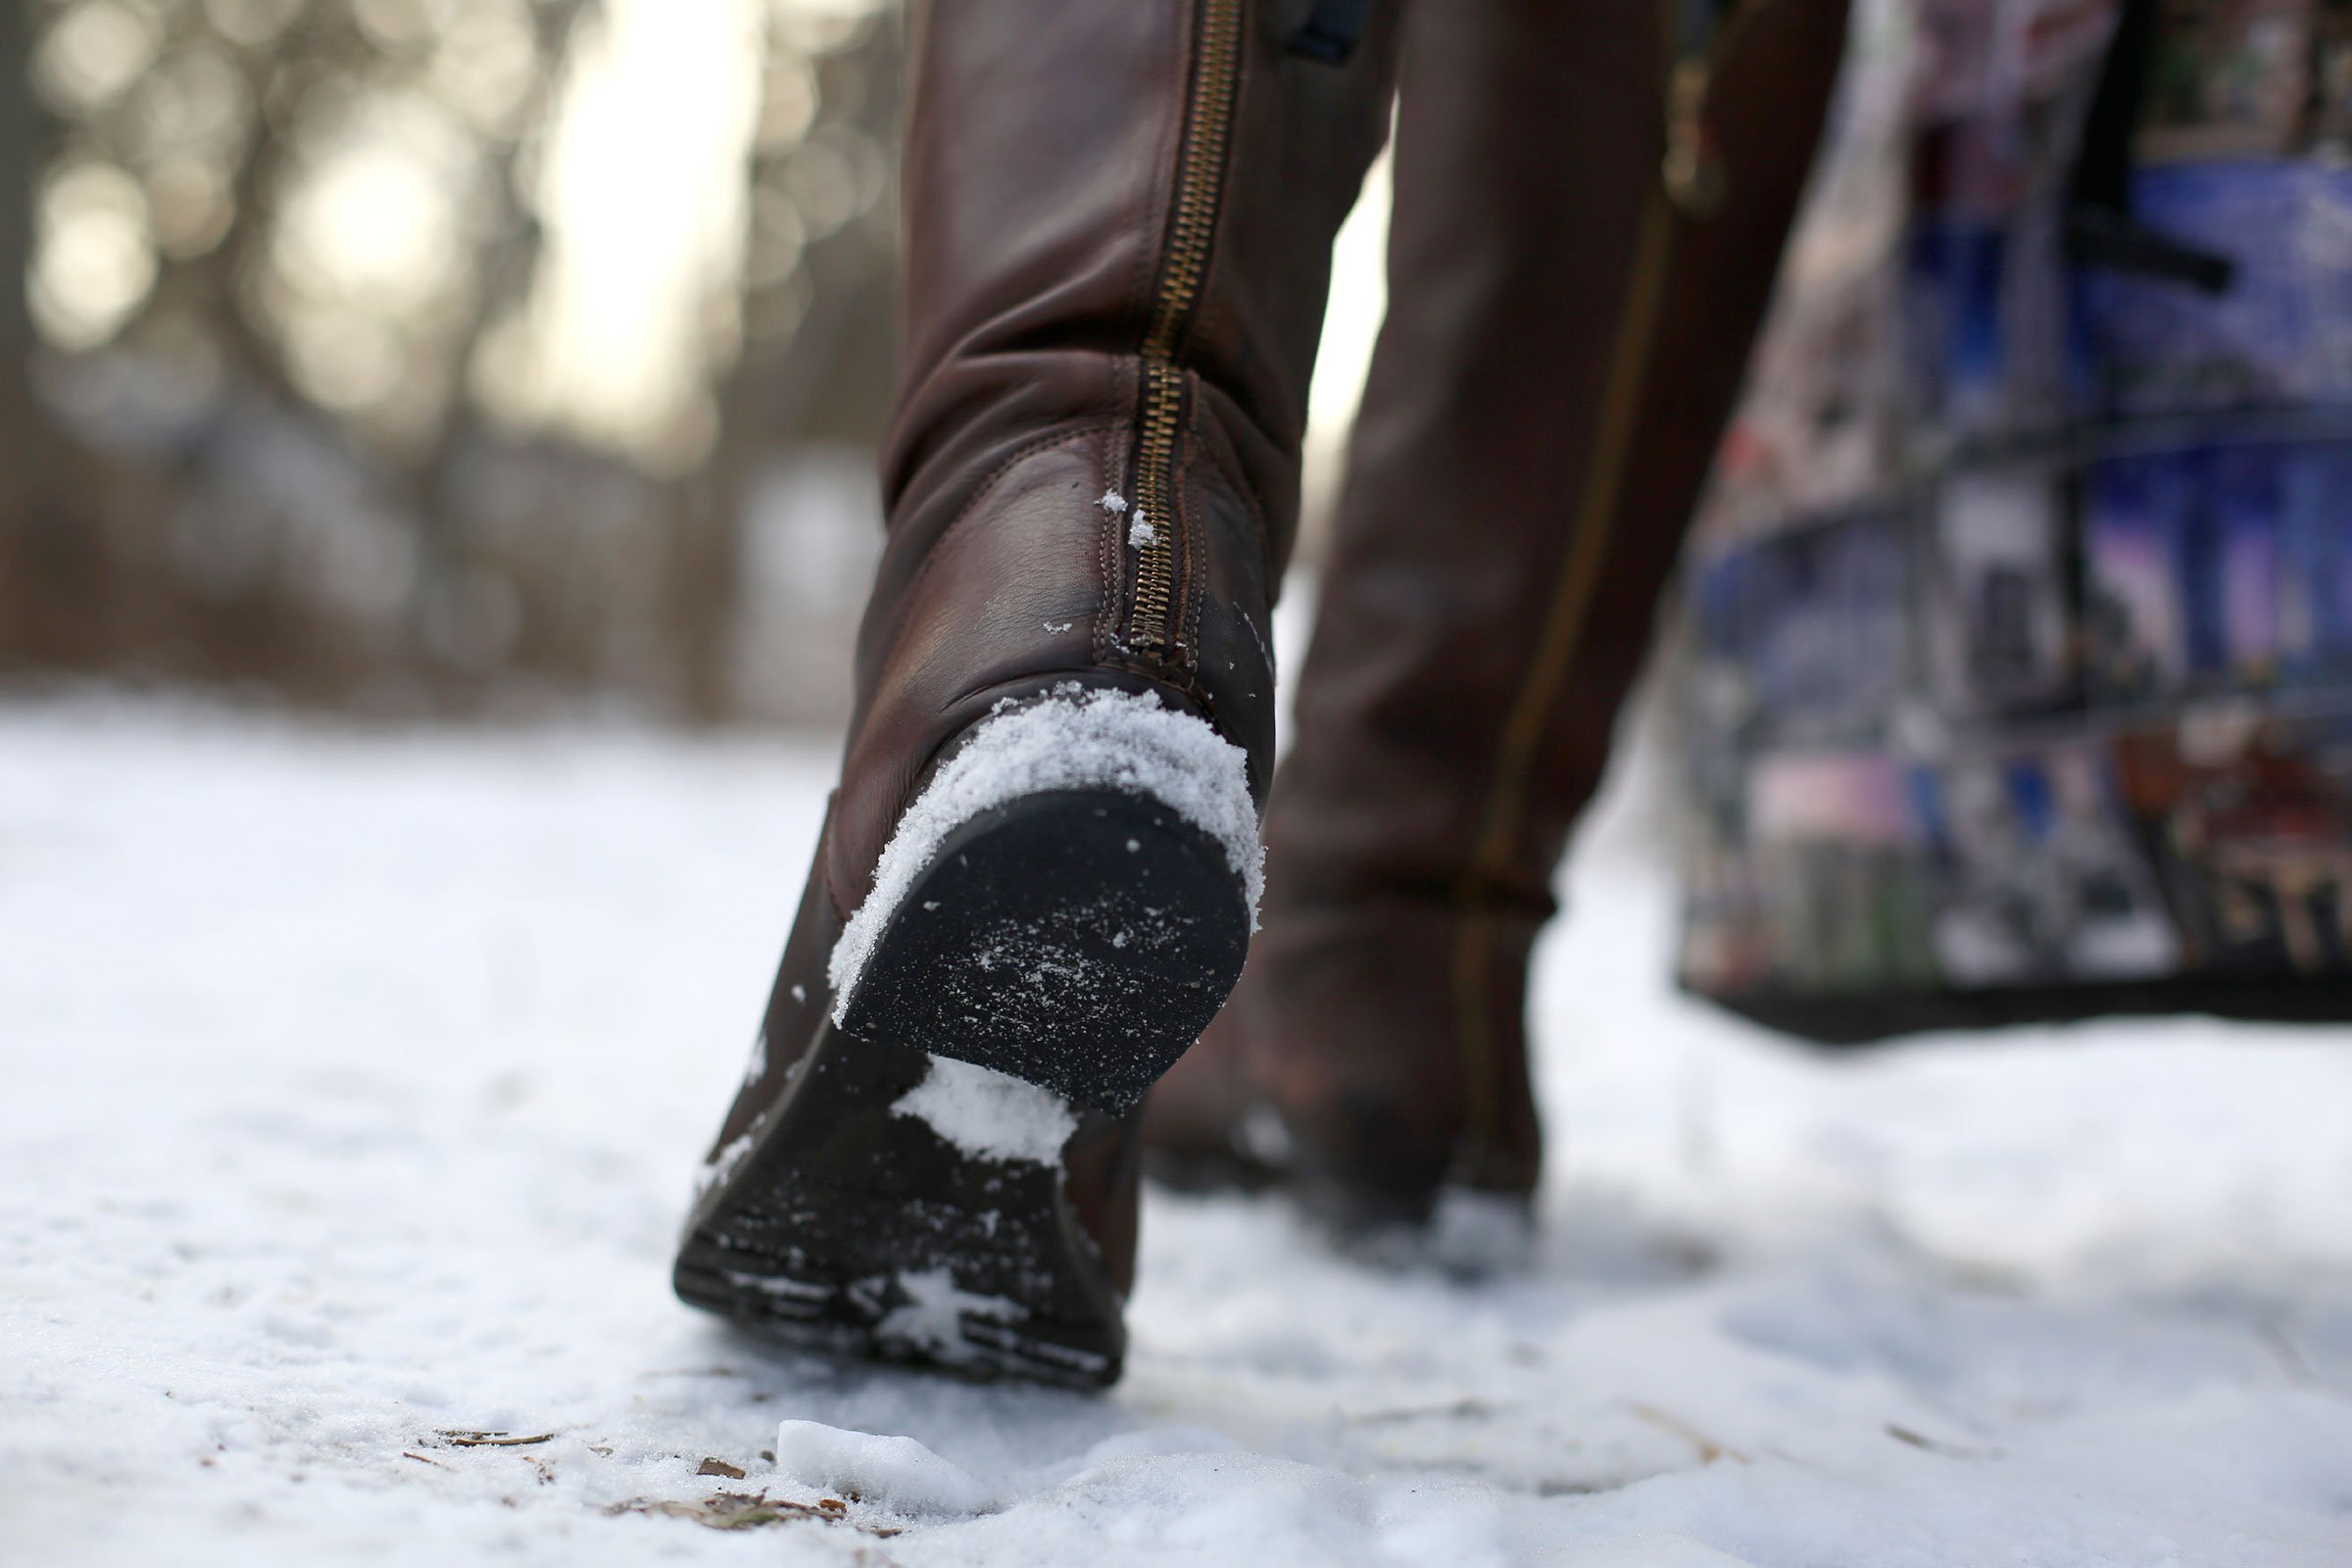 Сильно замерзают ноги. Скользкие зимние ботинки. Ботинки в снегу. Сапоги для снега. Ноги в зимней обуви.